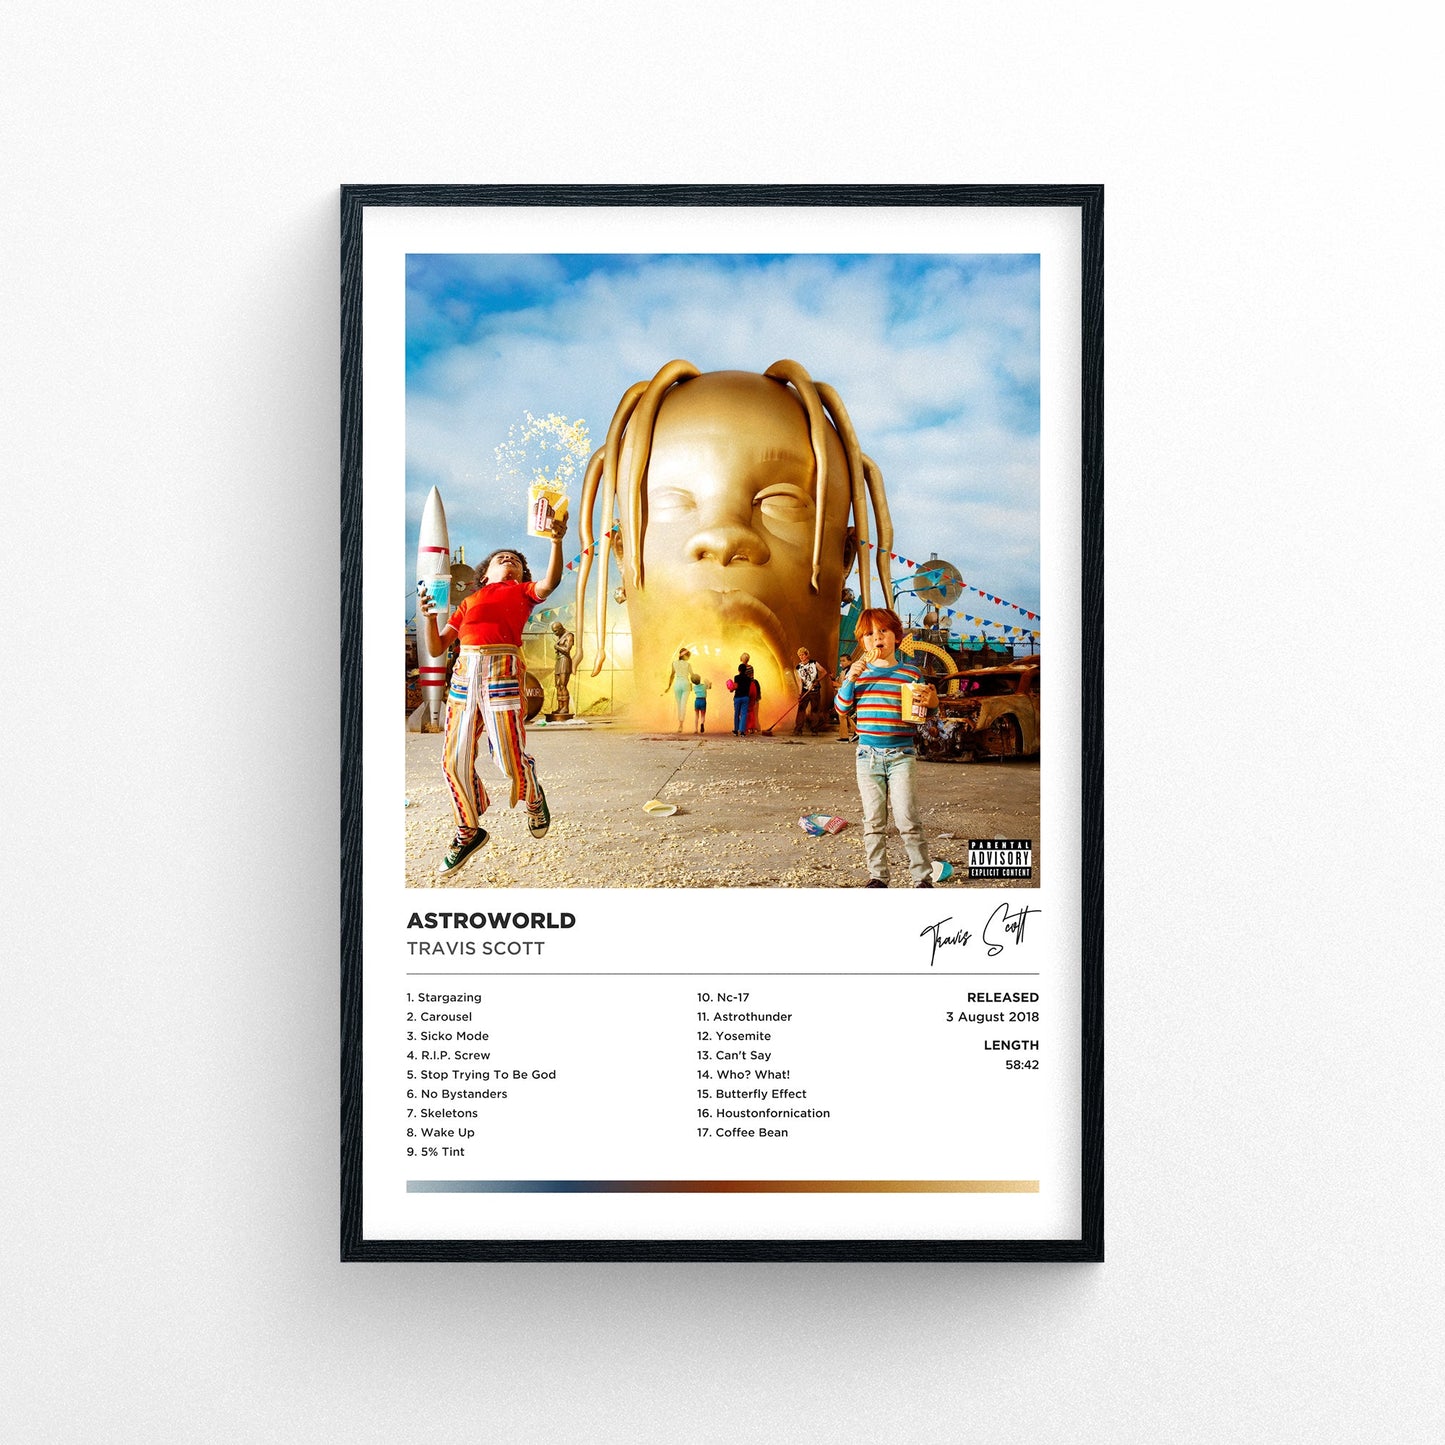 Travis Scott - Astroworld Framed Poster Print | Polaroid Style | Album Cover Artwork